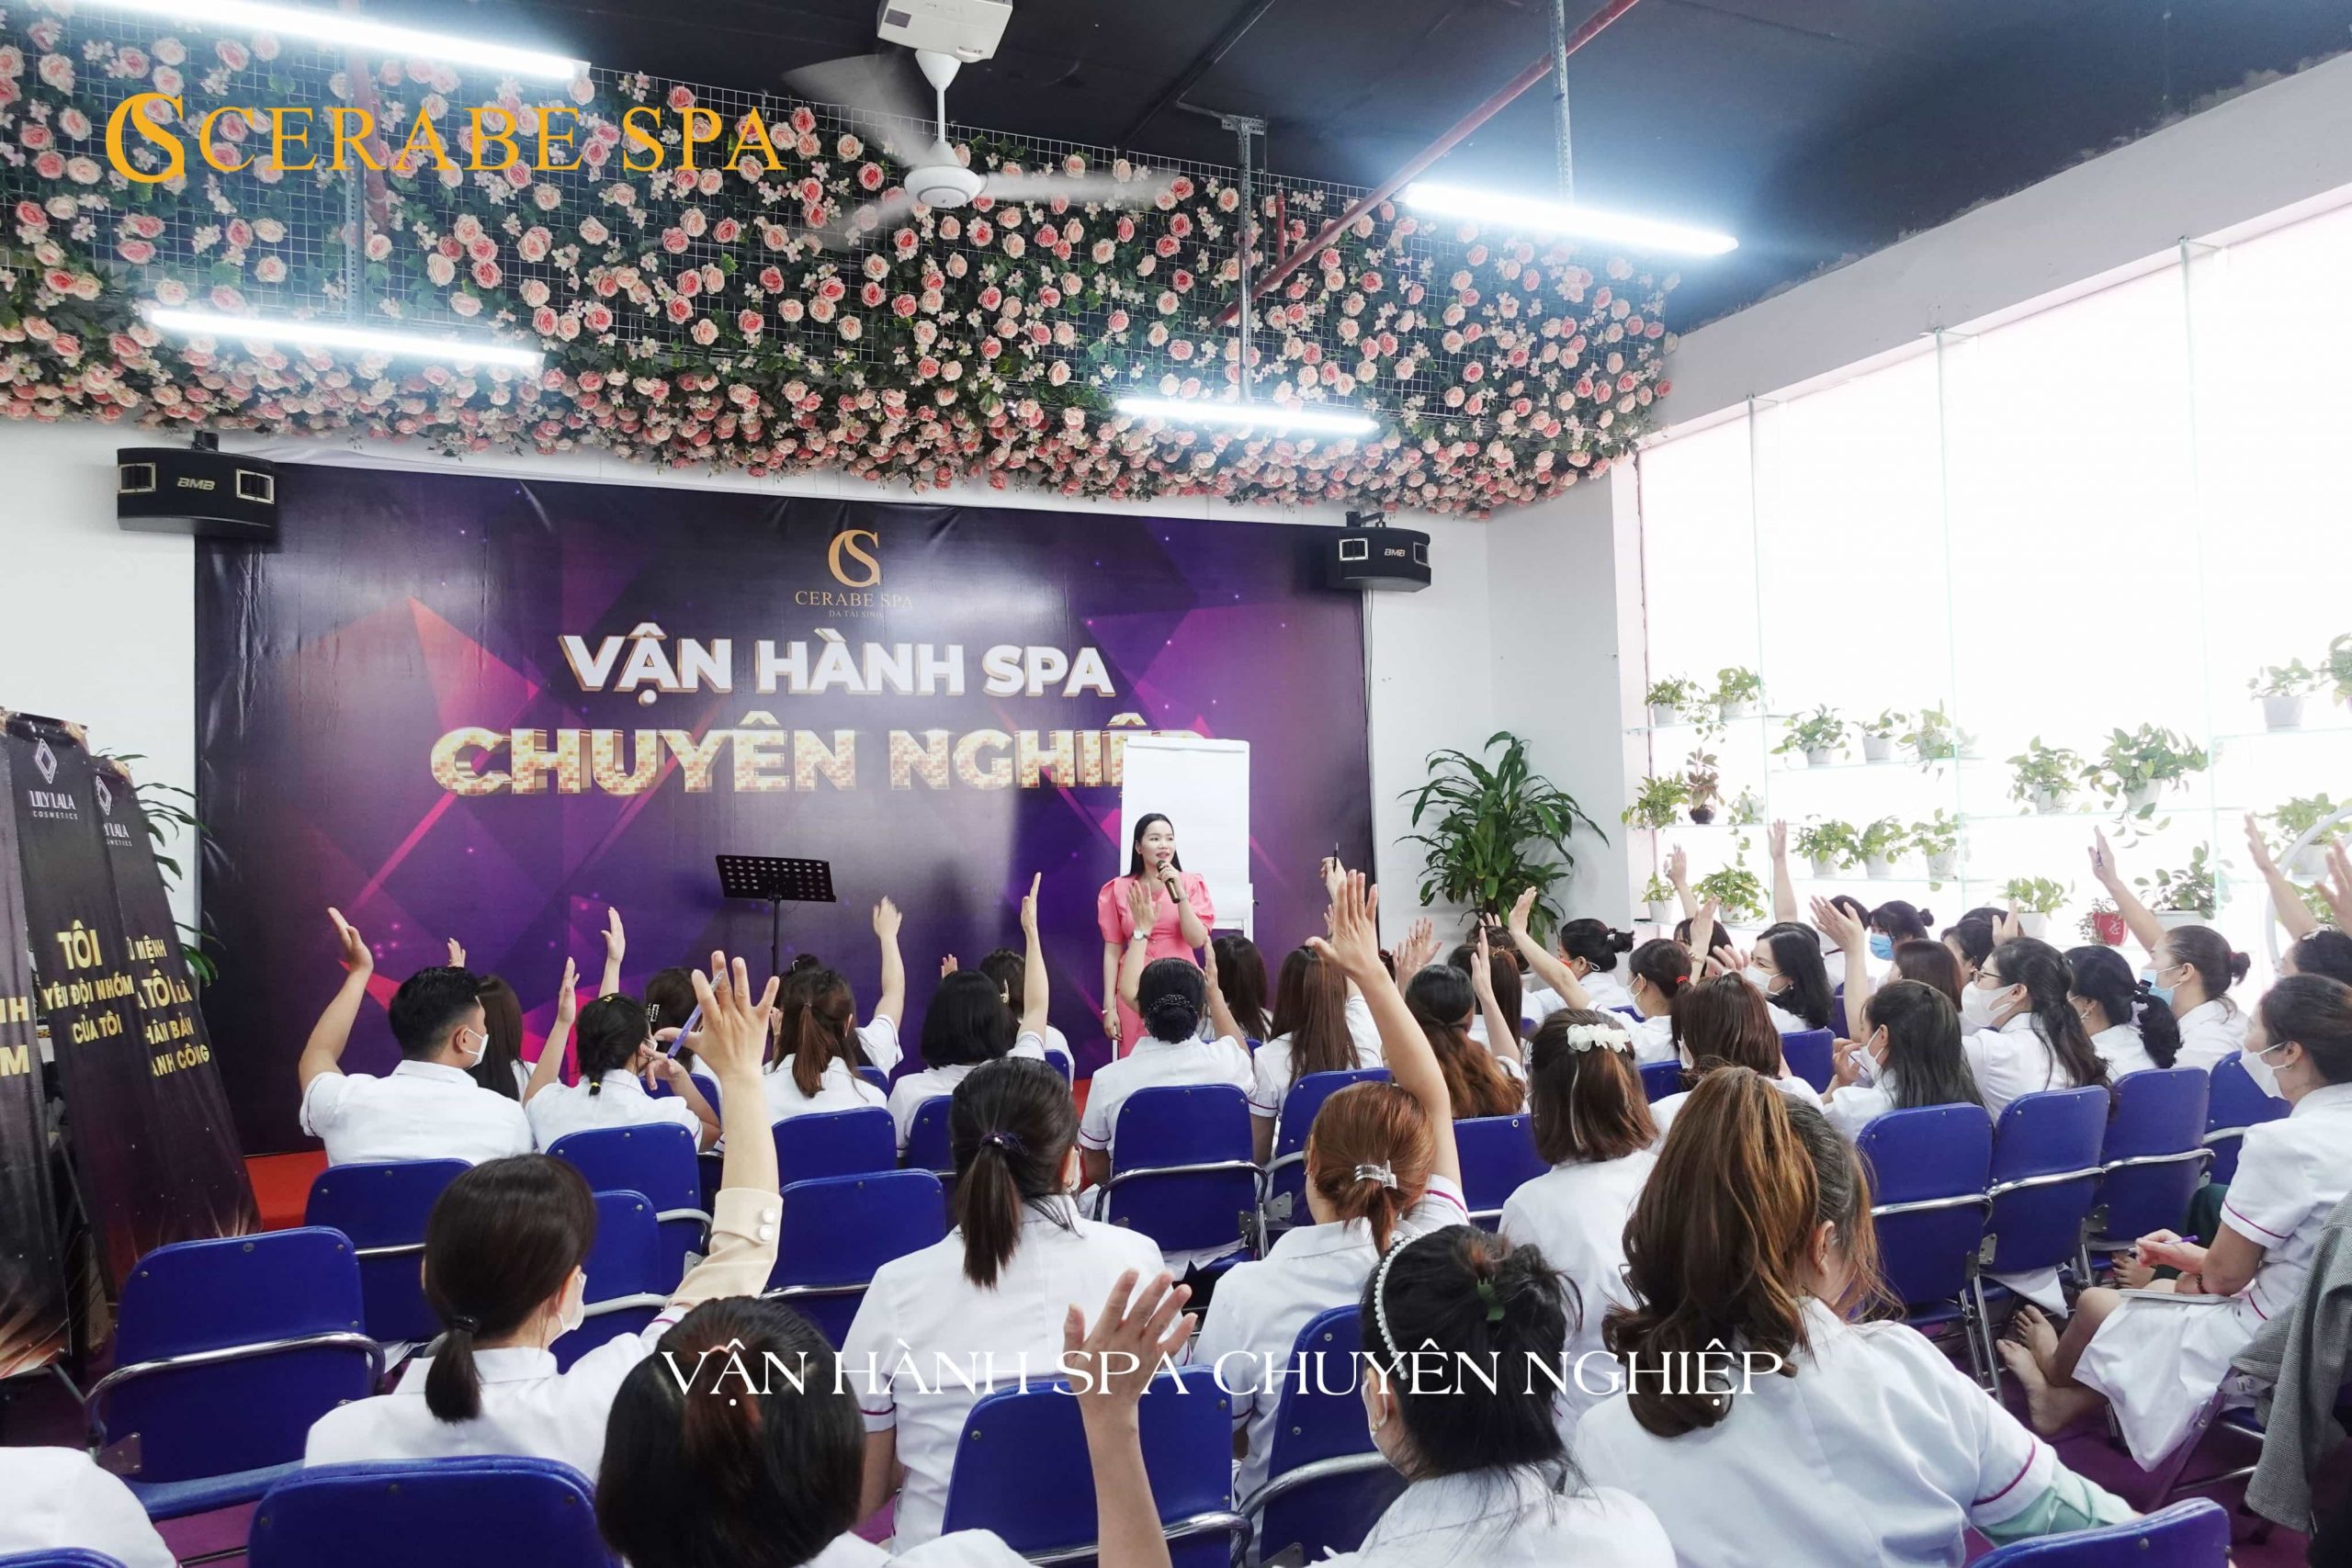 Các chủ spa, đại sứ giơ tay phát biểu tar lời câu hỏi của tổng giám đốc Đặng Thị Bắc